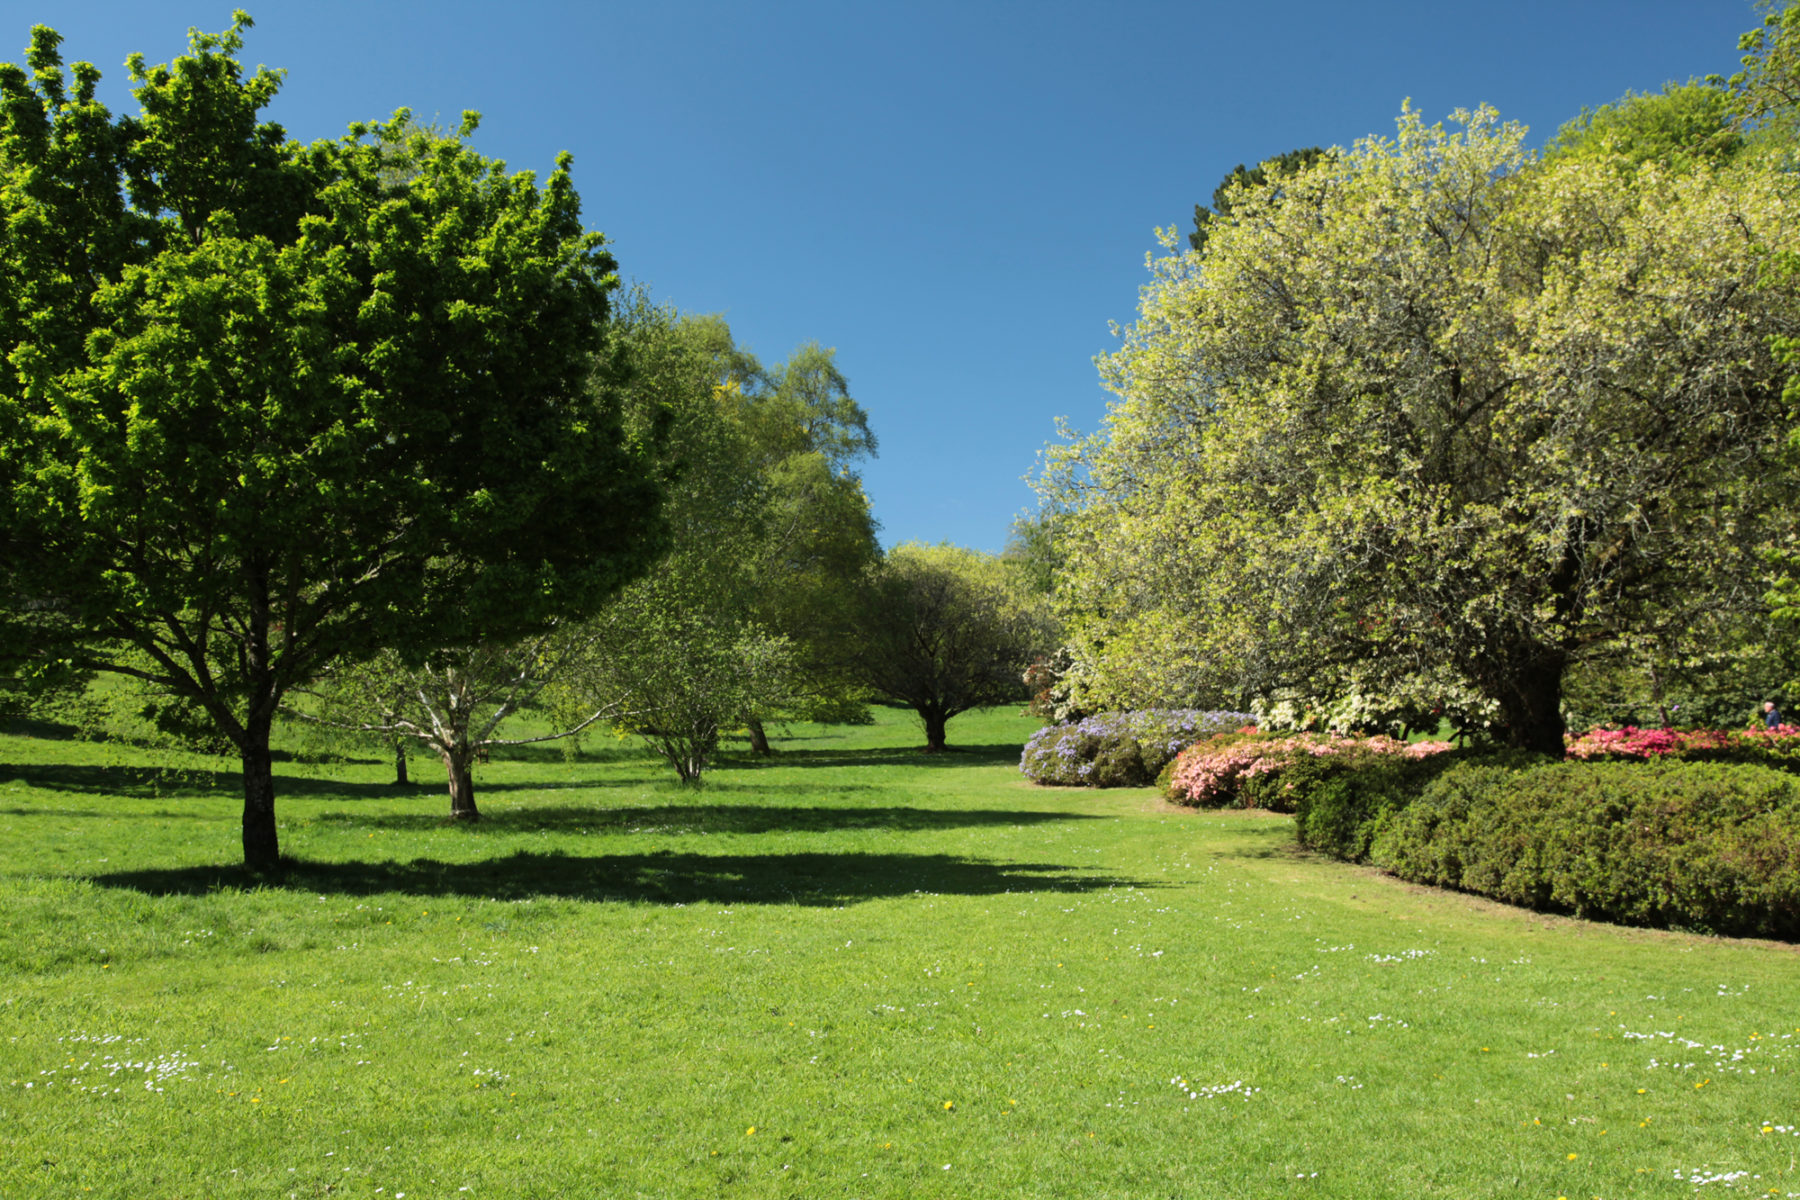 Cockington Arboretum